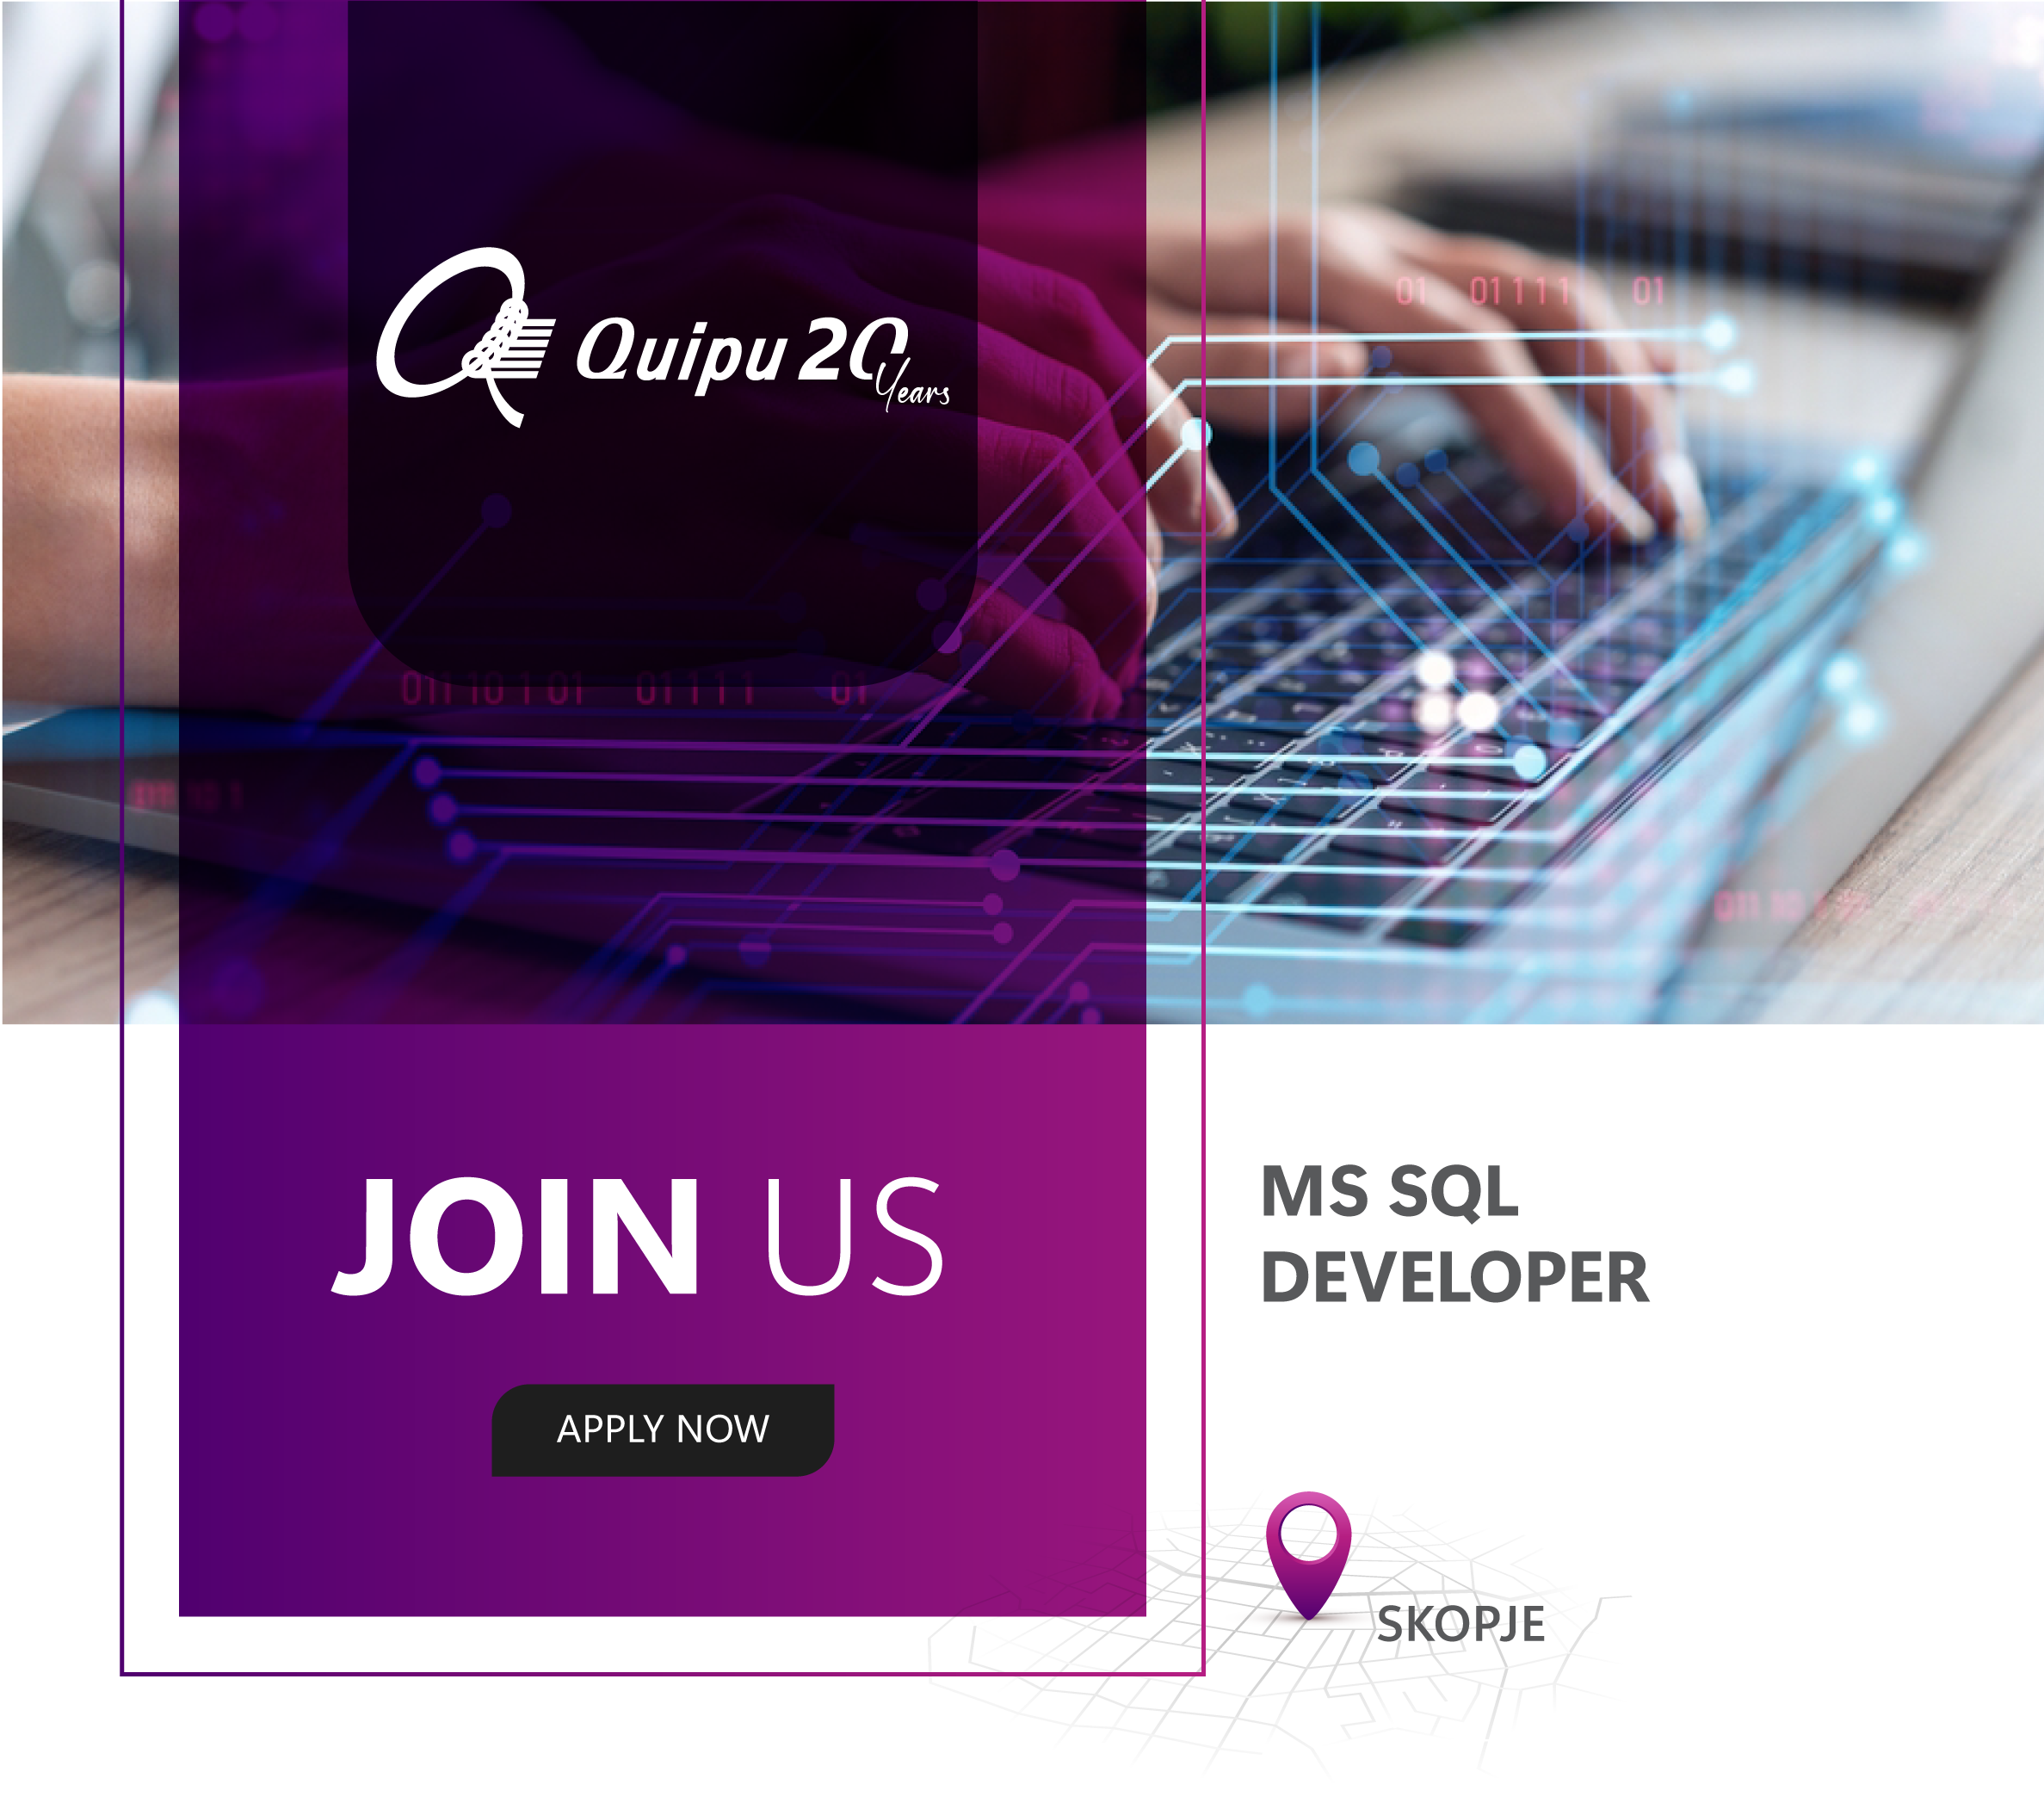 MS SQL Developer – Skopje